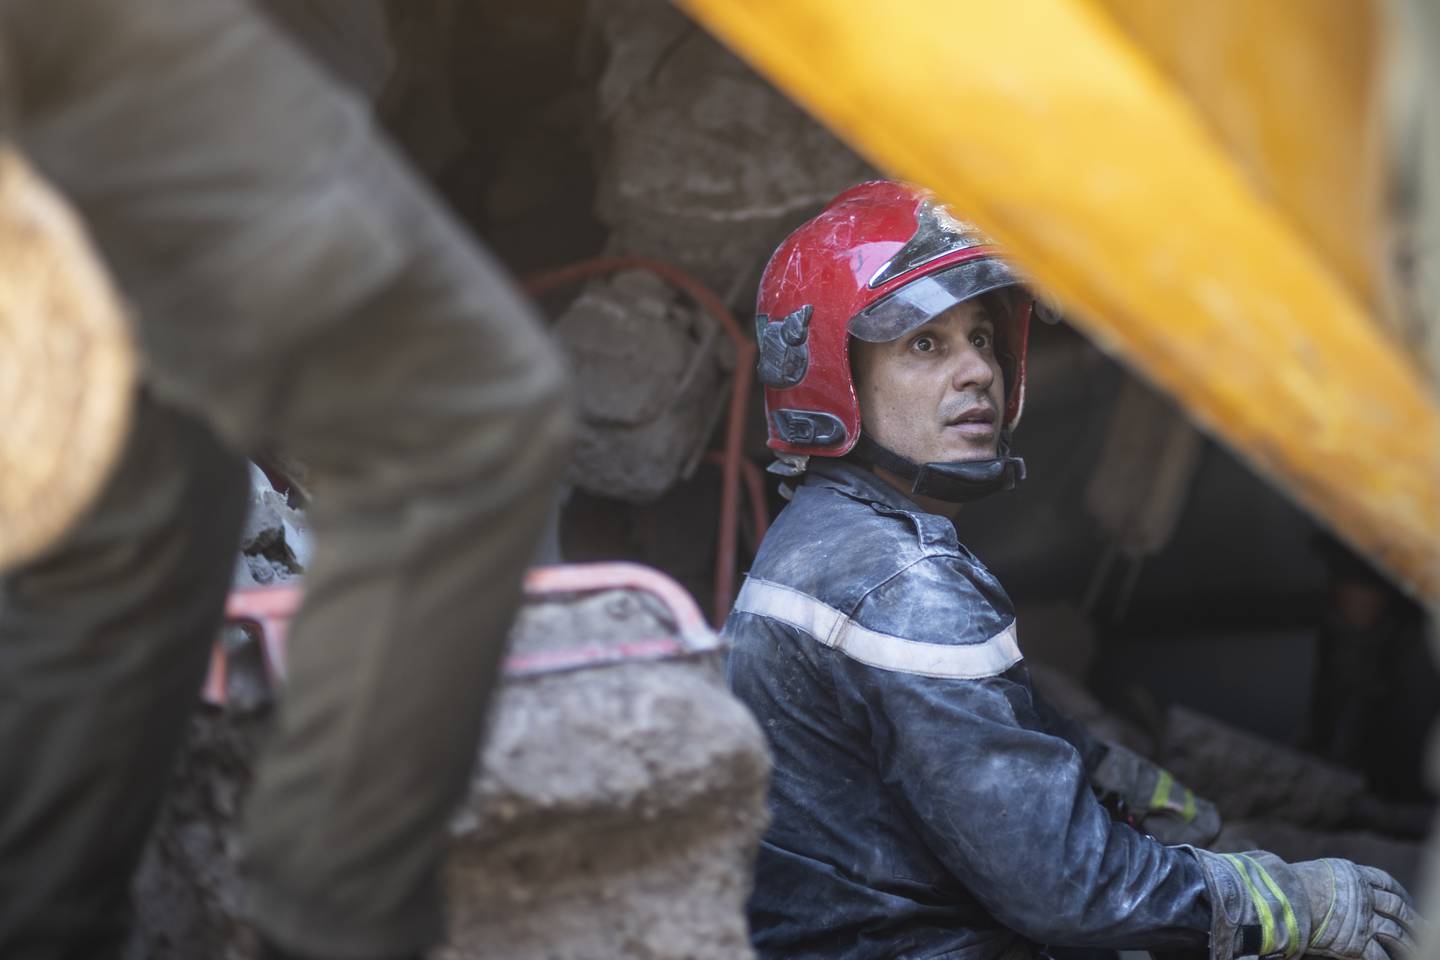 En redningsmann tar seg en liten pause. Redningsarbeidet er svært krevende. Foto: Mosa'ab Elshamy / AP / NTB